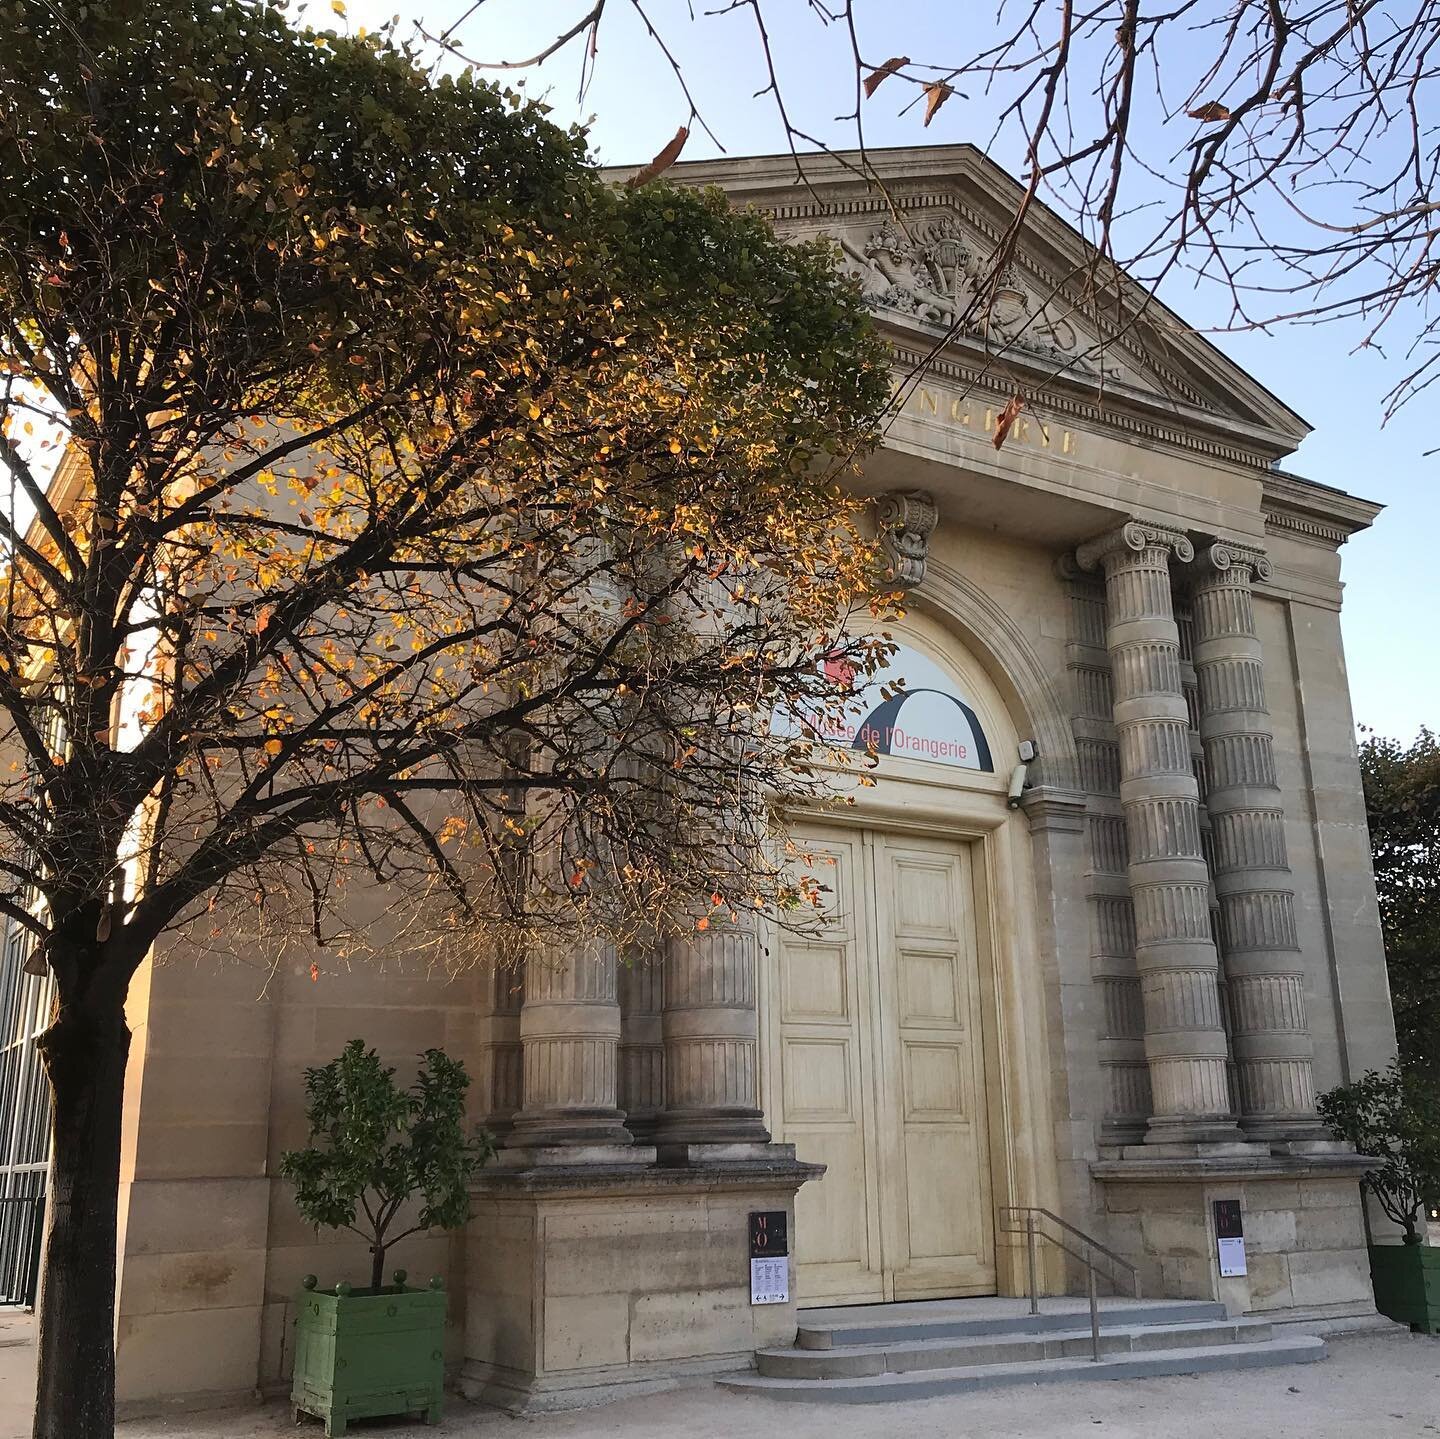 Orangerie-Museum-Parisology2.jpg